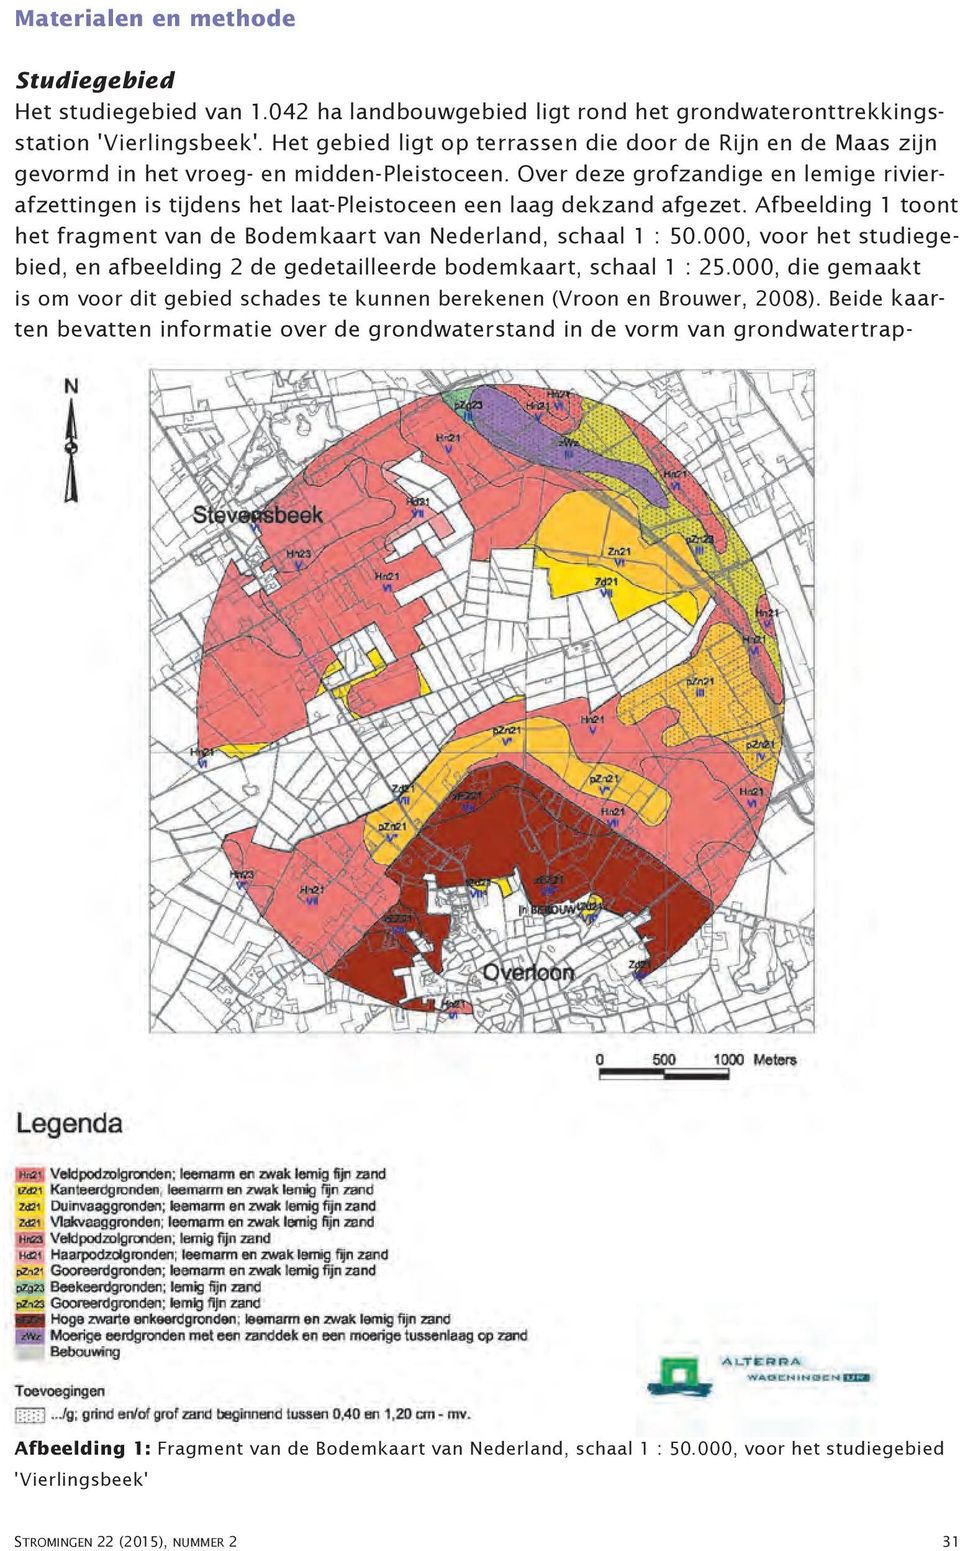 Bodemkaart van Nederland, schaal 1 : 50000, voor het studiegebied, en afbeelding 2 de gedetailleerde bodemkaart, schaal 1 : 25000, die gemaakt is om voor dit gebied schades te kunnen berekenen (Vroon